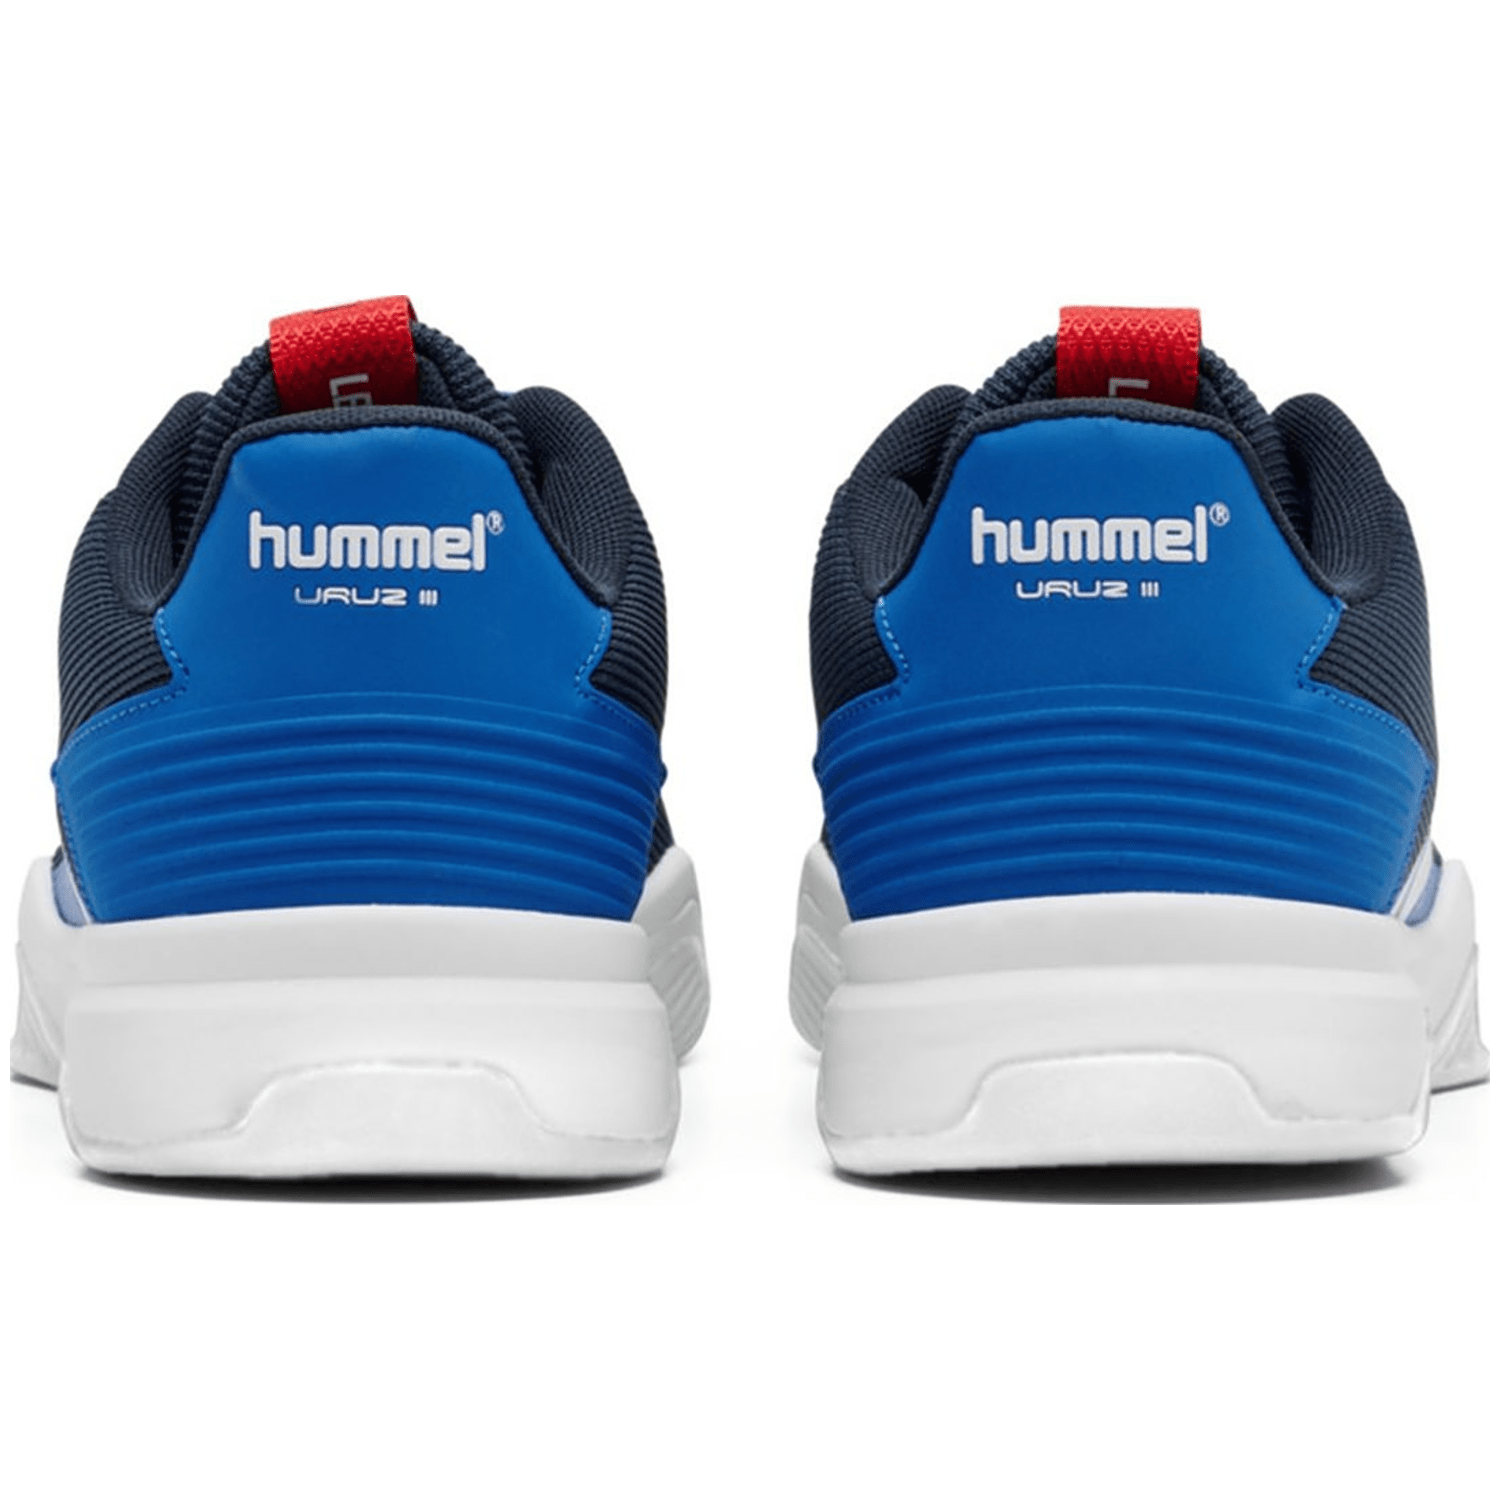 Hummel Uruz III Handballschuhe